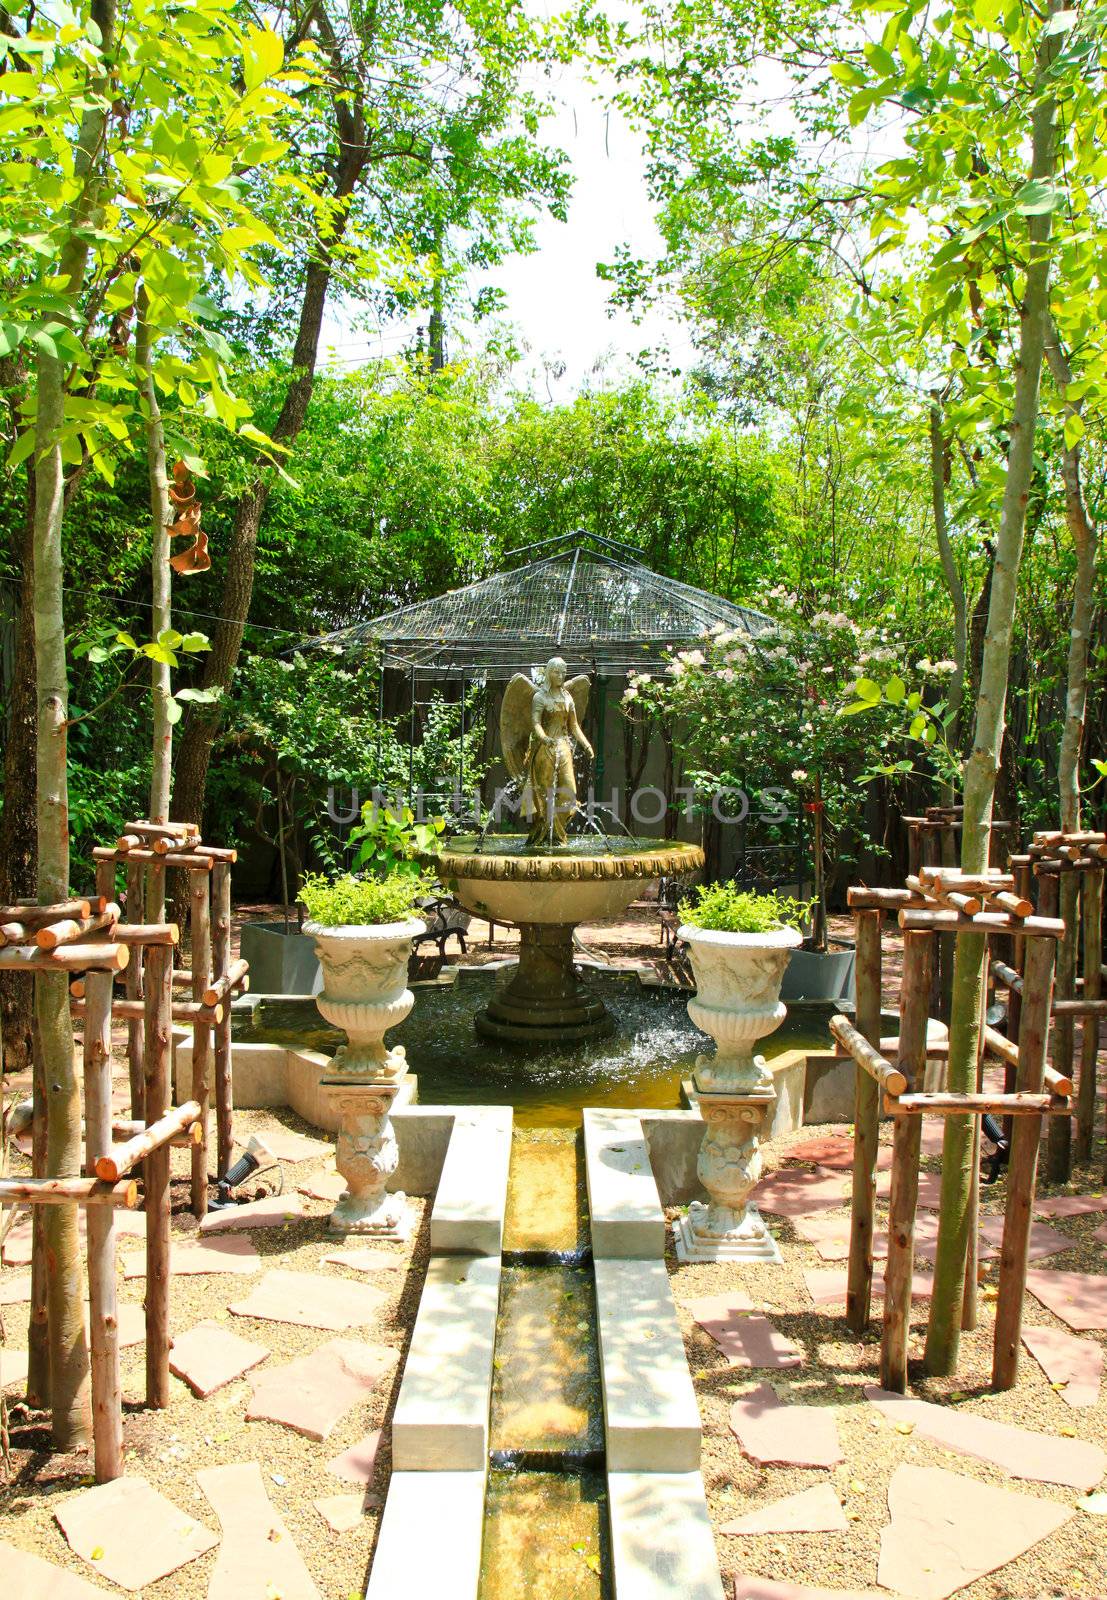 Angel sculpture fountain in the garden by nuchylee